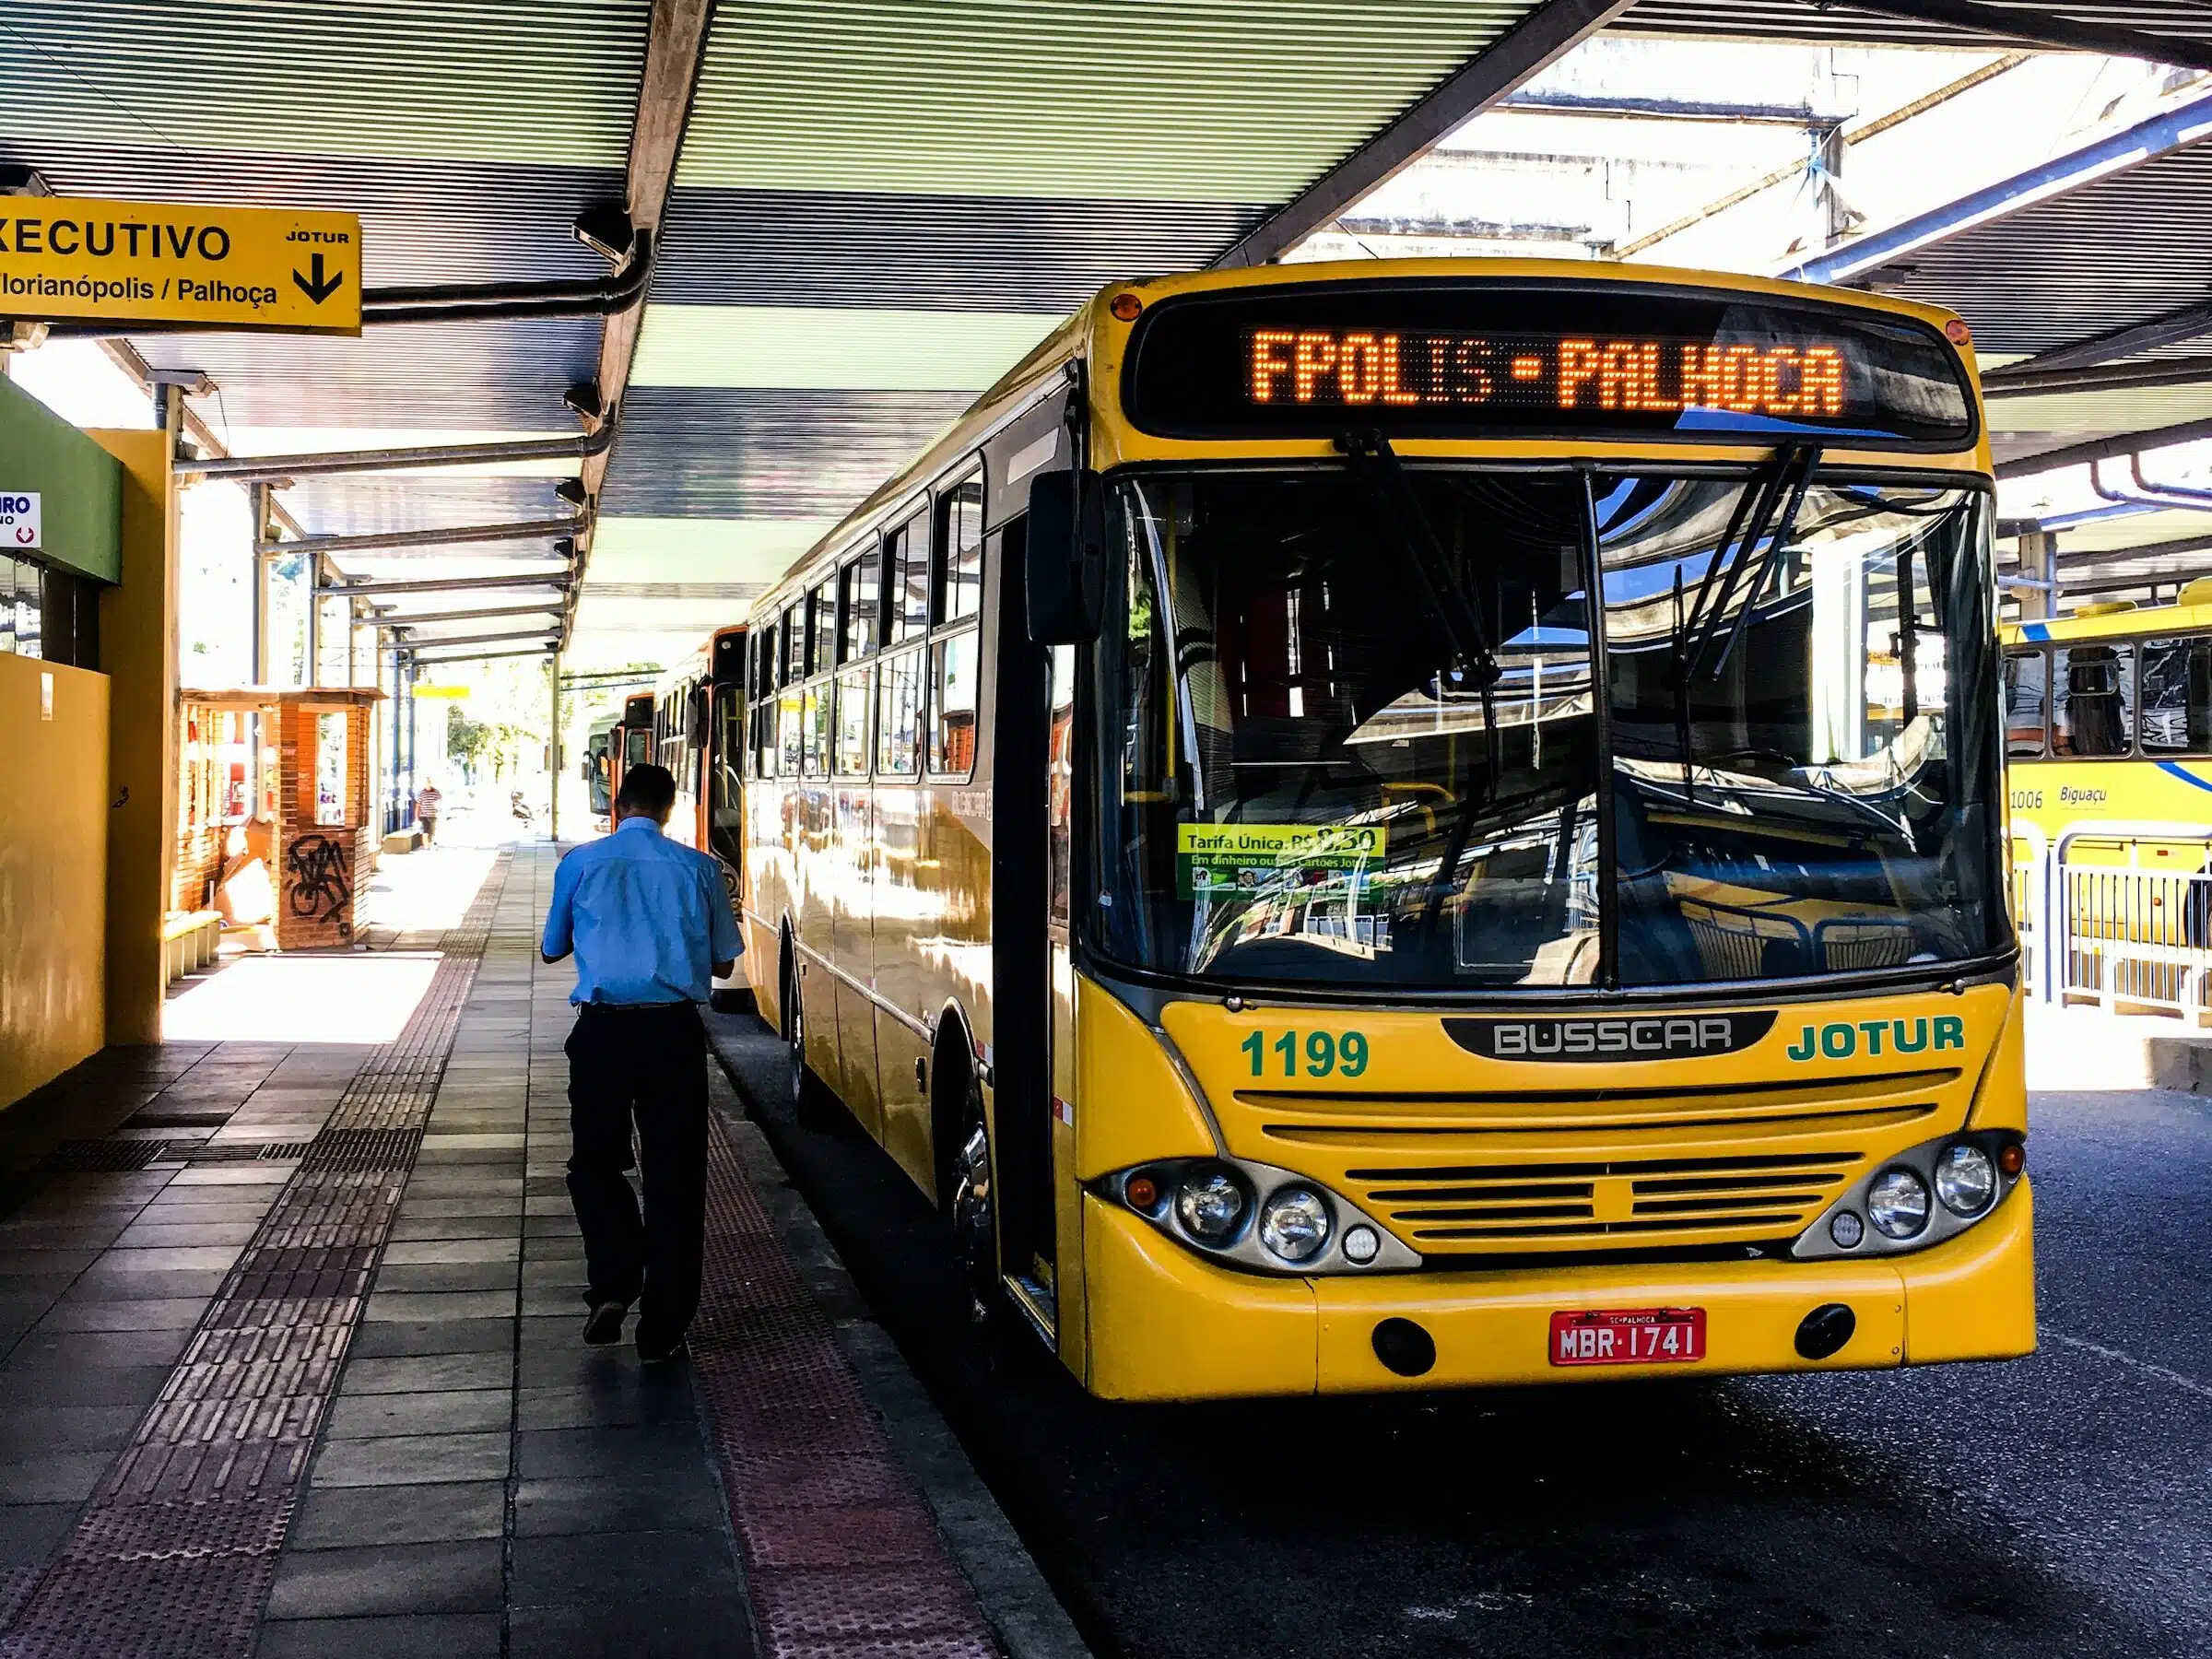 Bus in Brazil